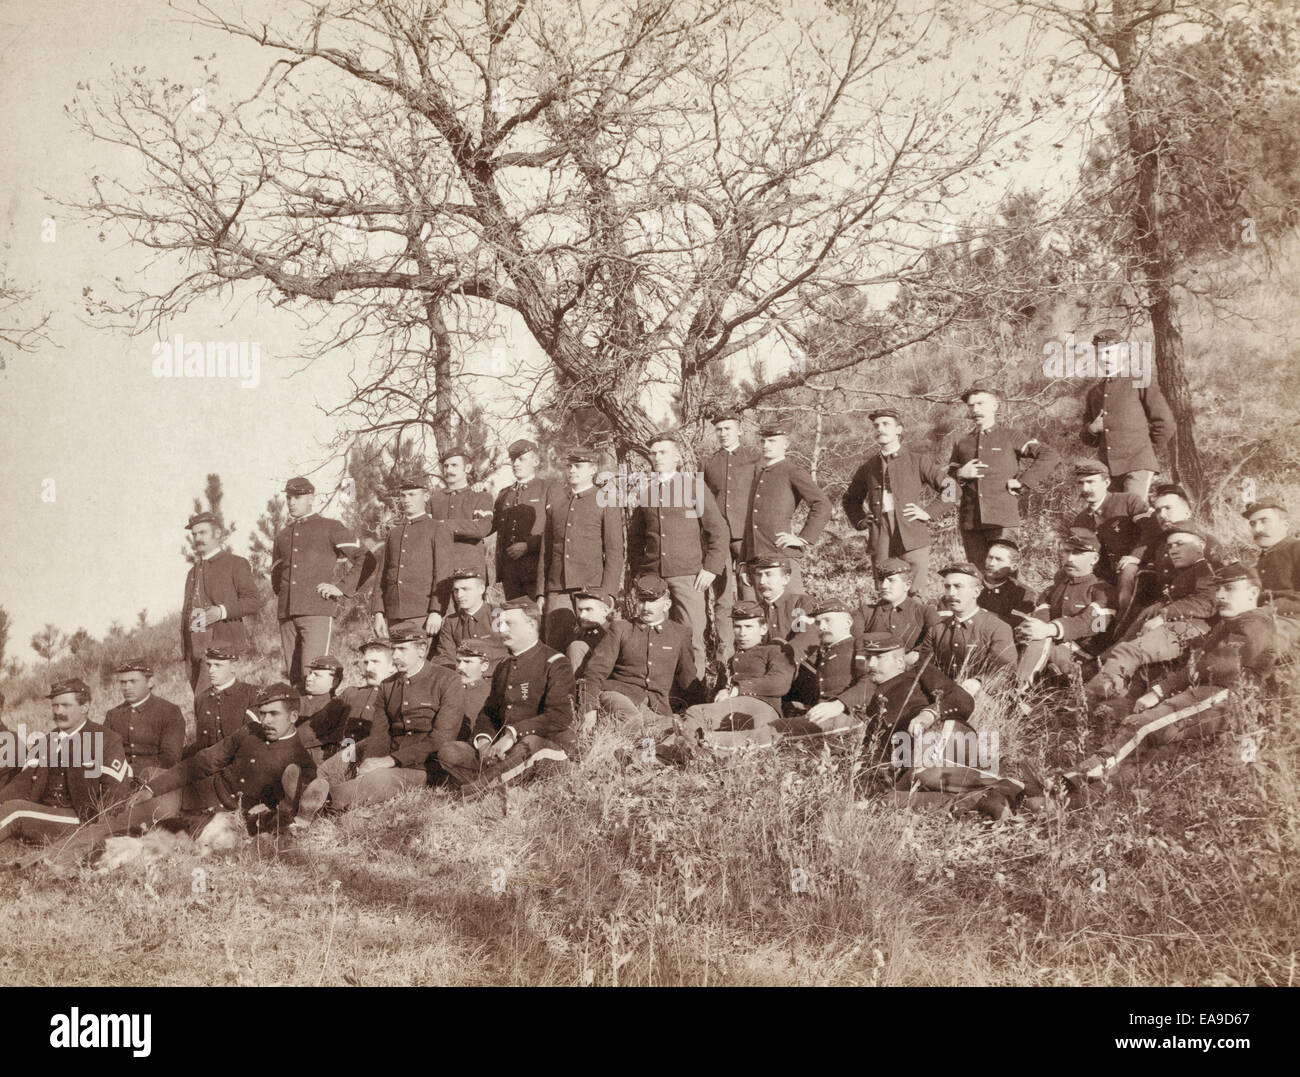 Firma "C," 3. US Infanterie nahe Fort Meade, South Dakota.  Gruppe von uniformierten Soldaten, sitzen und stehen, posierte mit Gewehre vor einem bewaldeten Hügel, um 1890 Stockfoto